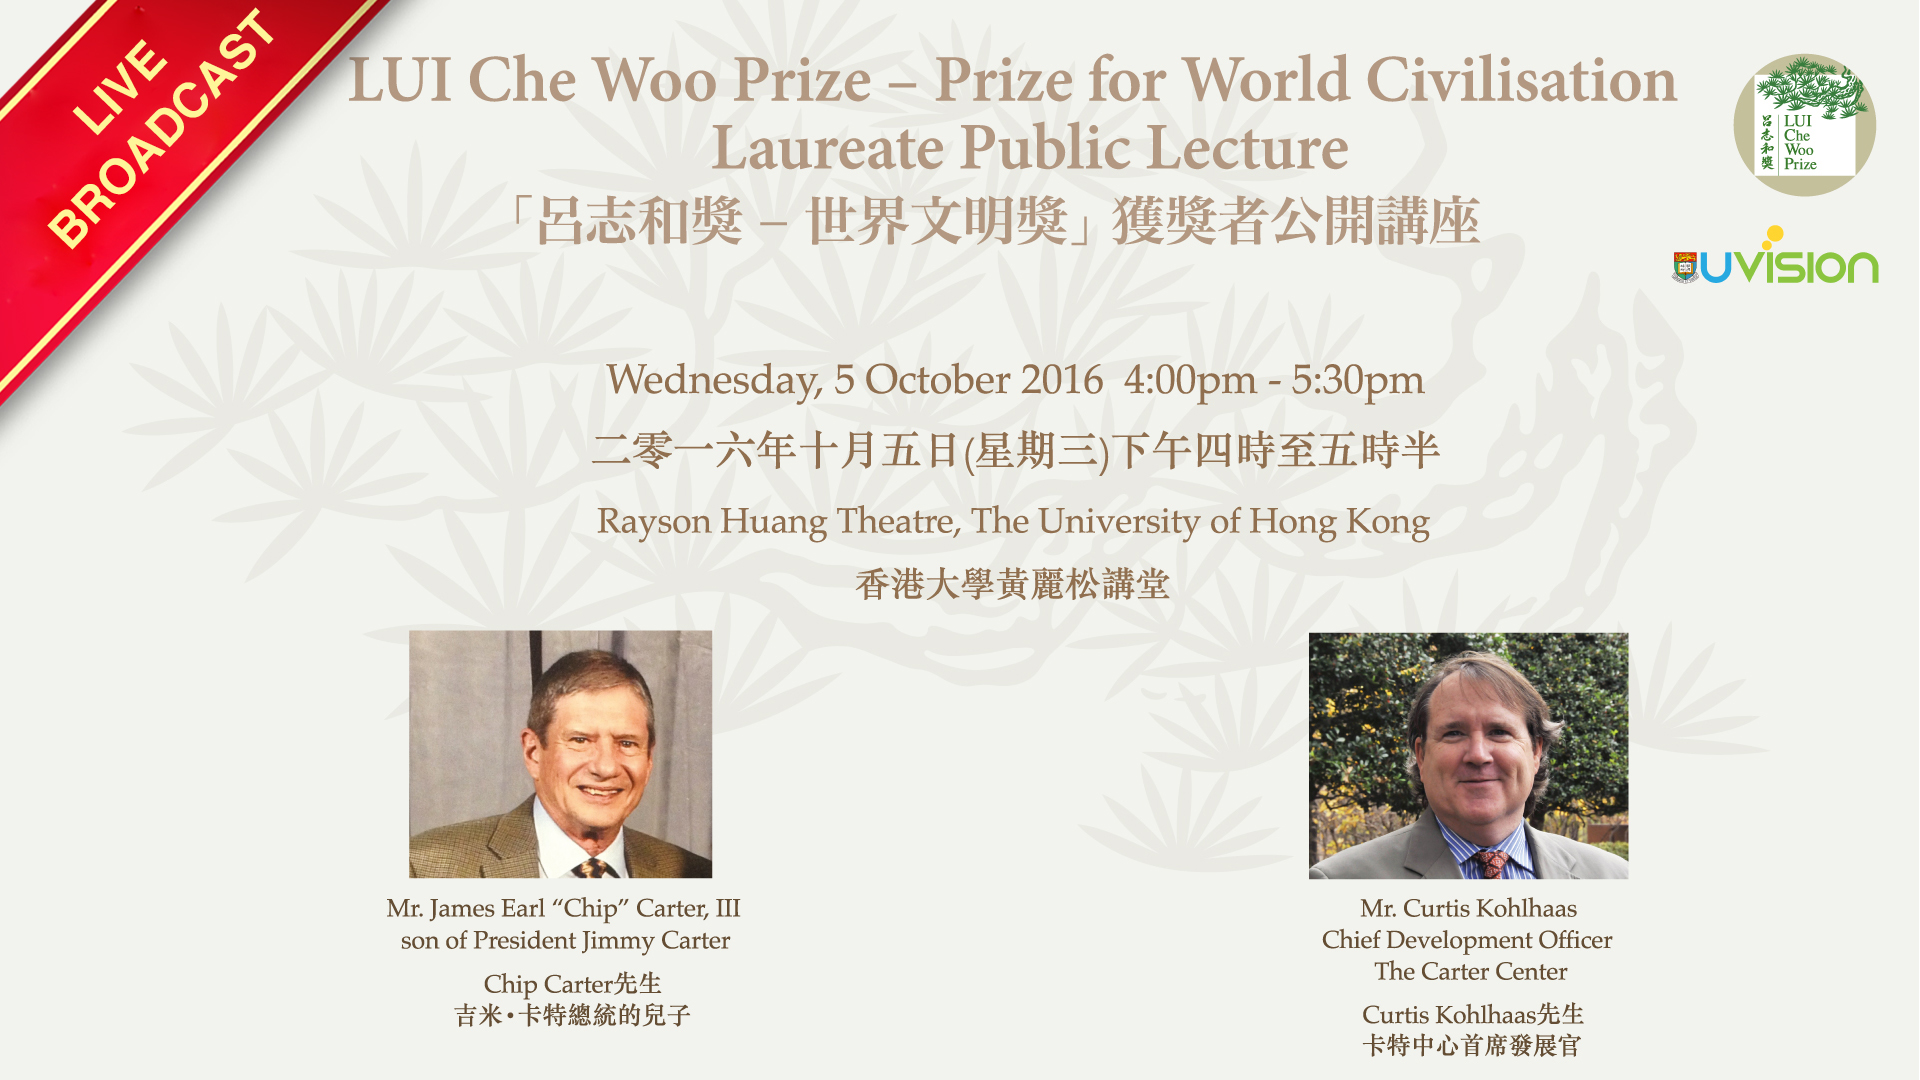 LUI Che Woo Prize for World Civilisation Laureate Public Lecture